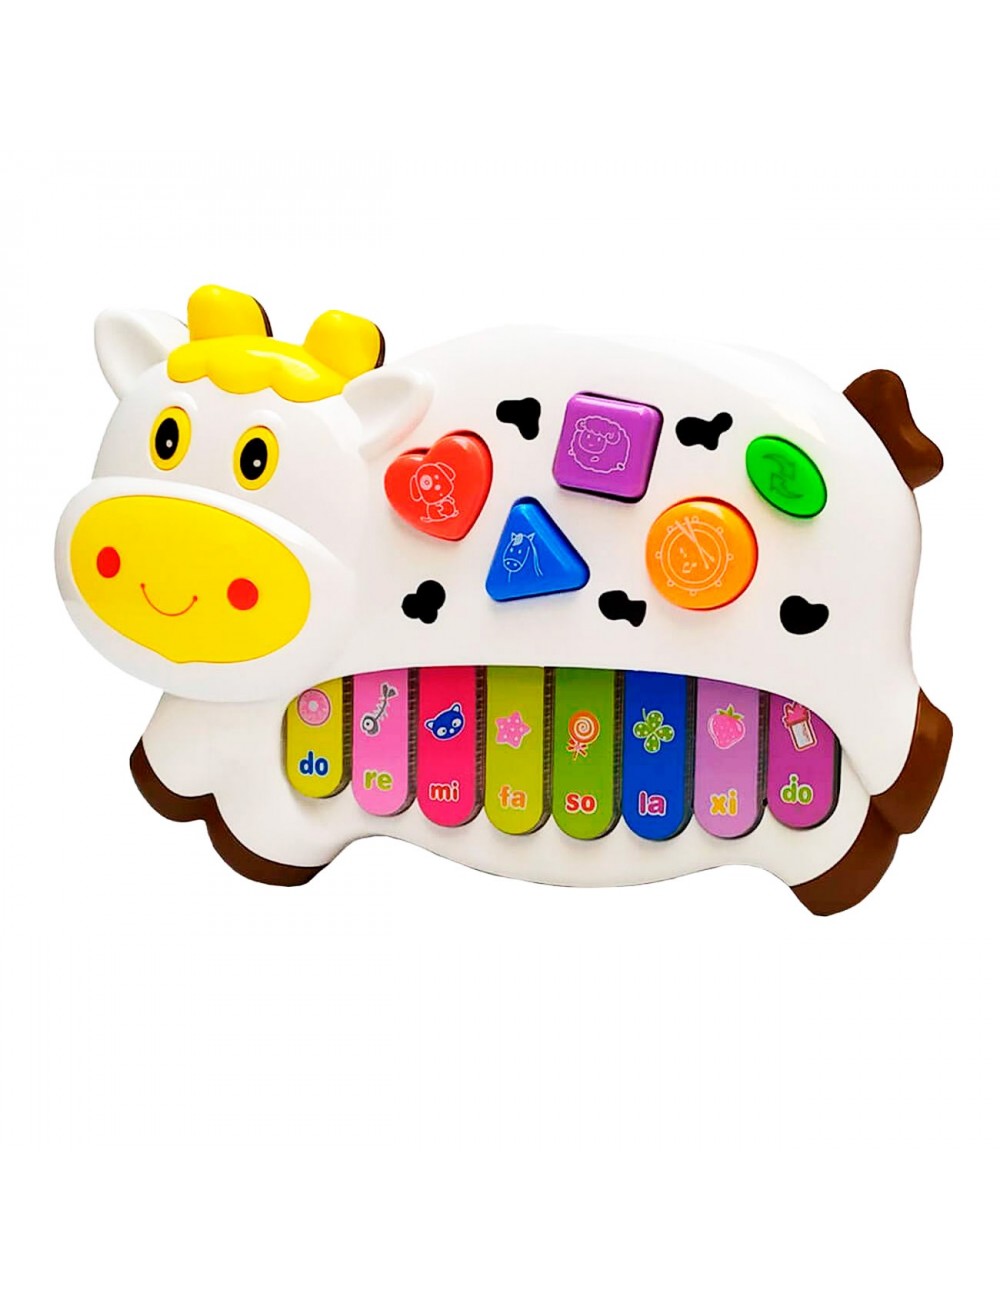 Piano Musical Interactivo En Forma De Vaca Para Bebés al Por mayor